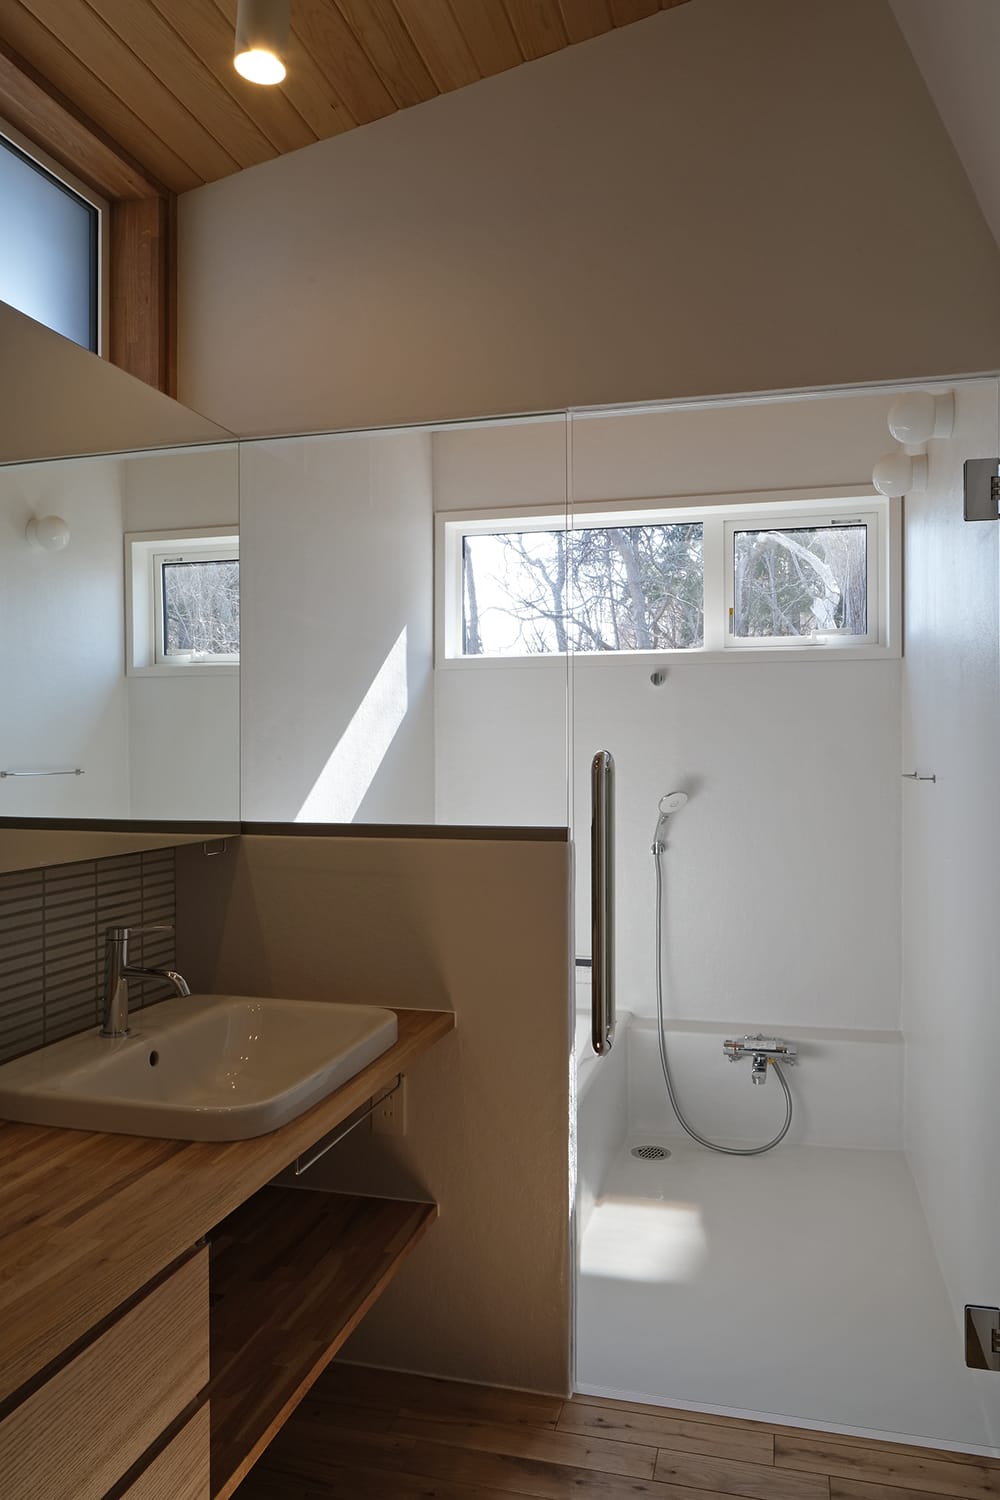 ガラスドアとガラスパーテーションで透けて繋がる明るいバスルームと洗面脱衣室